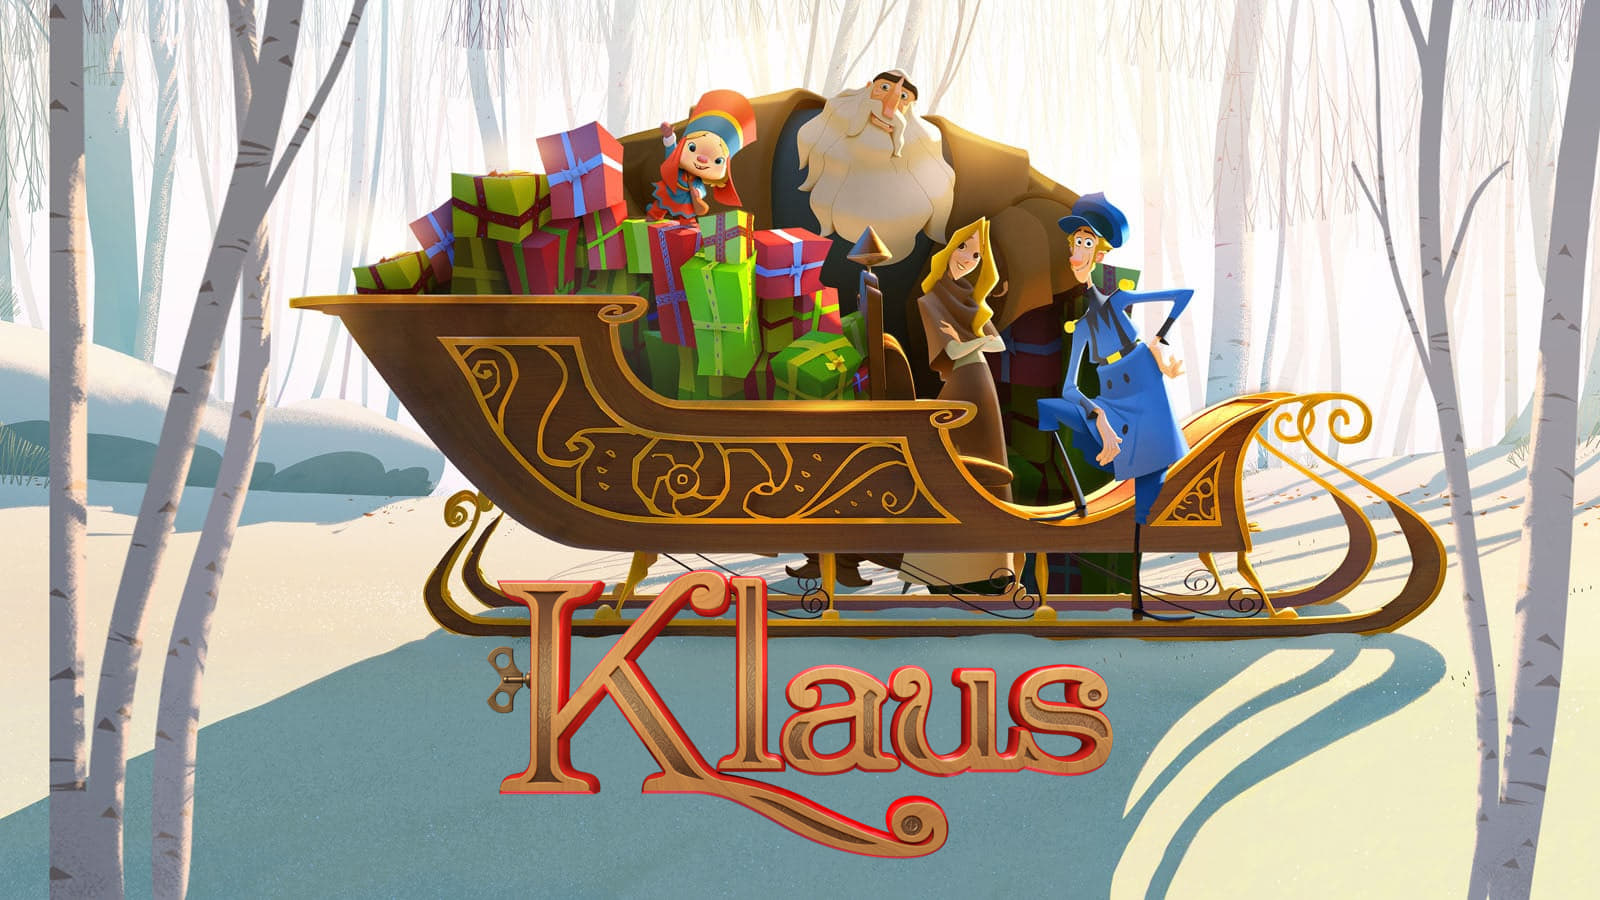 รีวิว klaus - มหัศจรรย์ตำนานคริสต์มาส